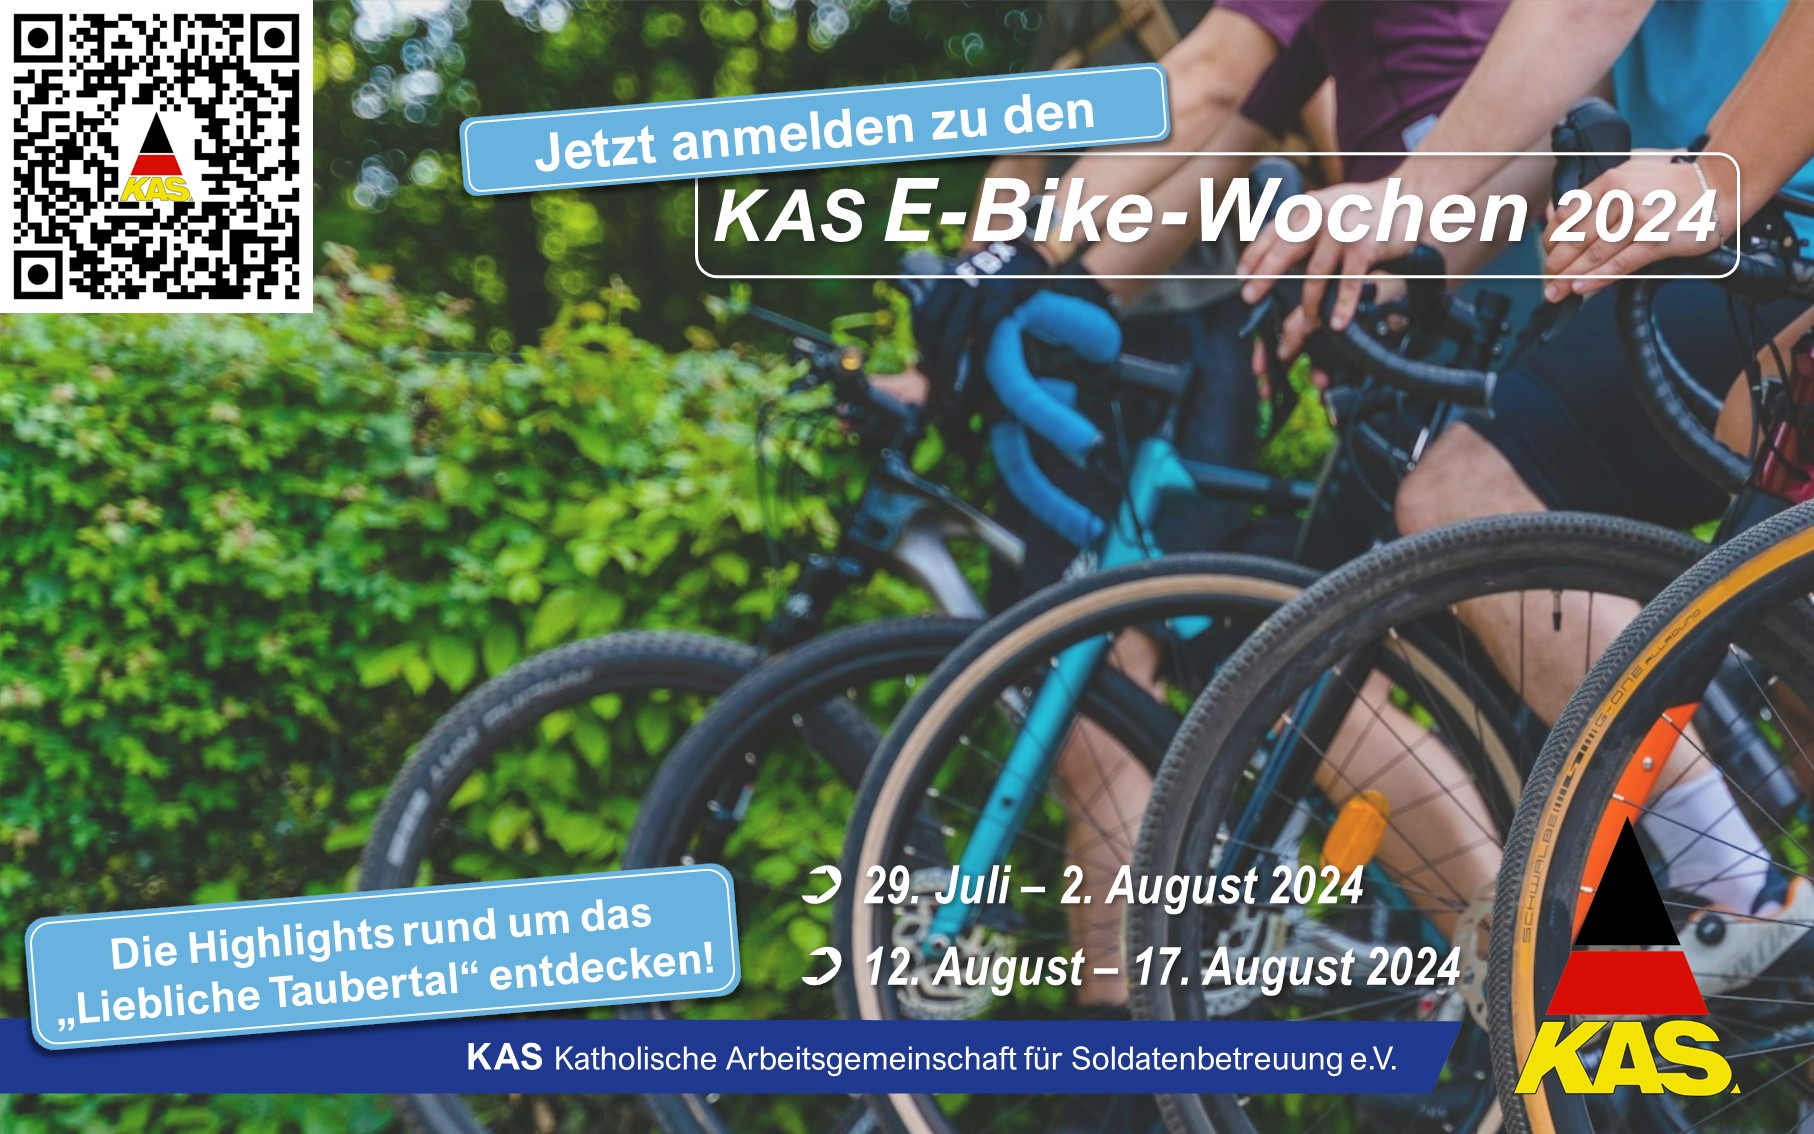 KAS E-Bike-Wochen 2024 im "lieblichen Taubertal"